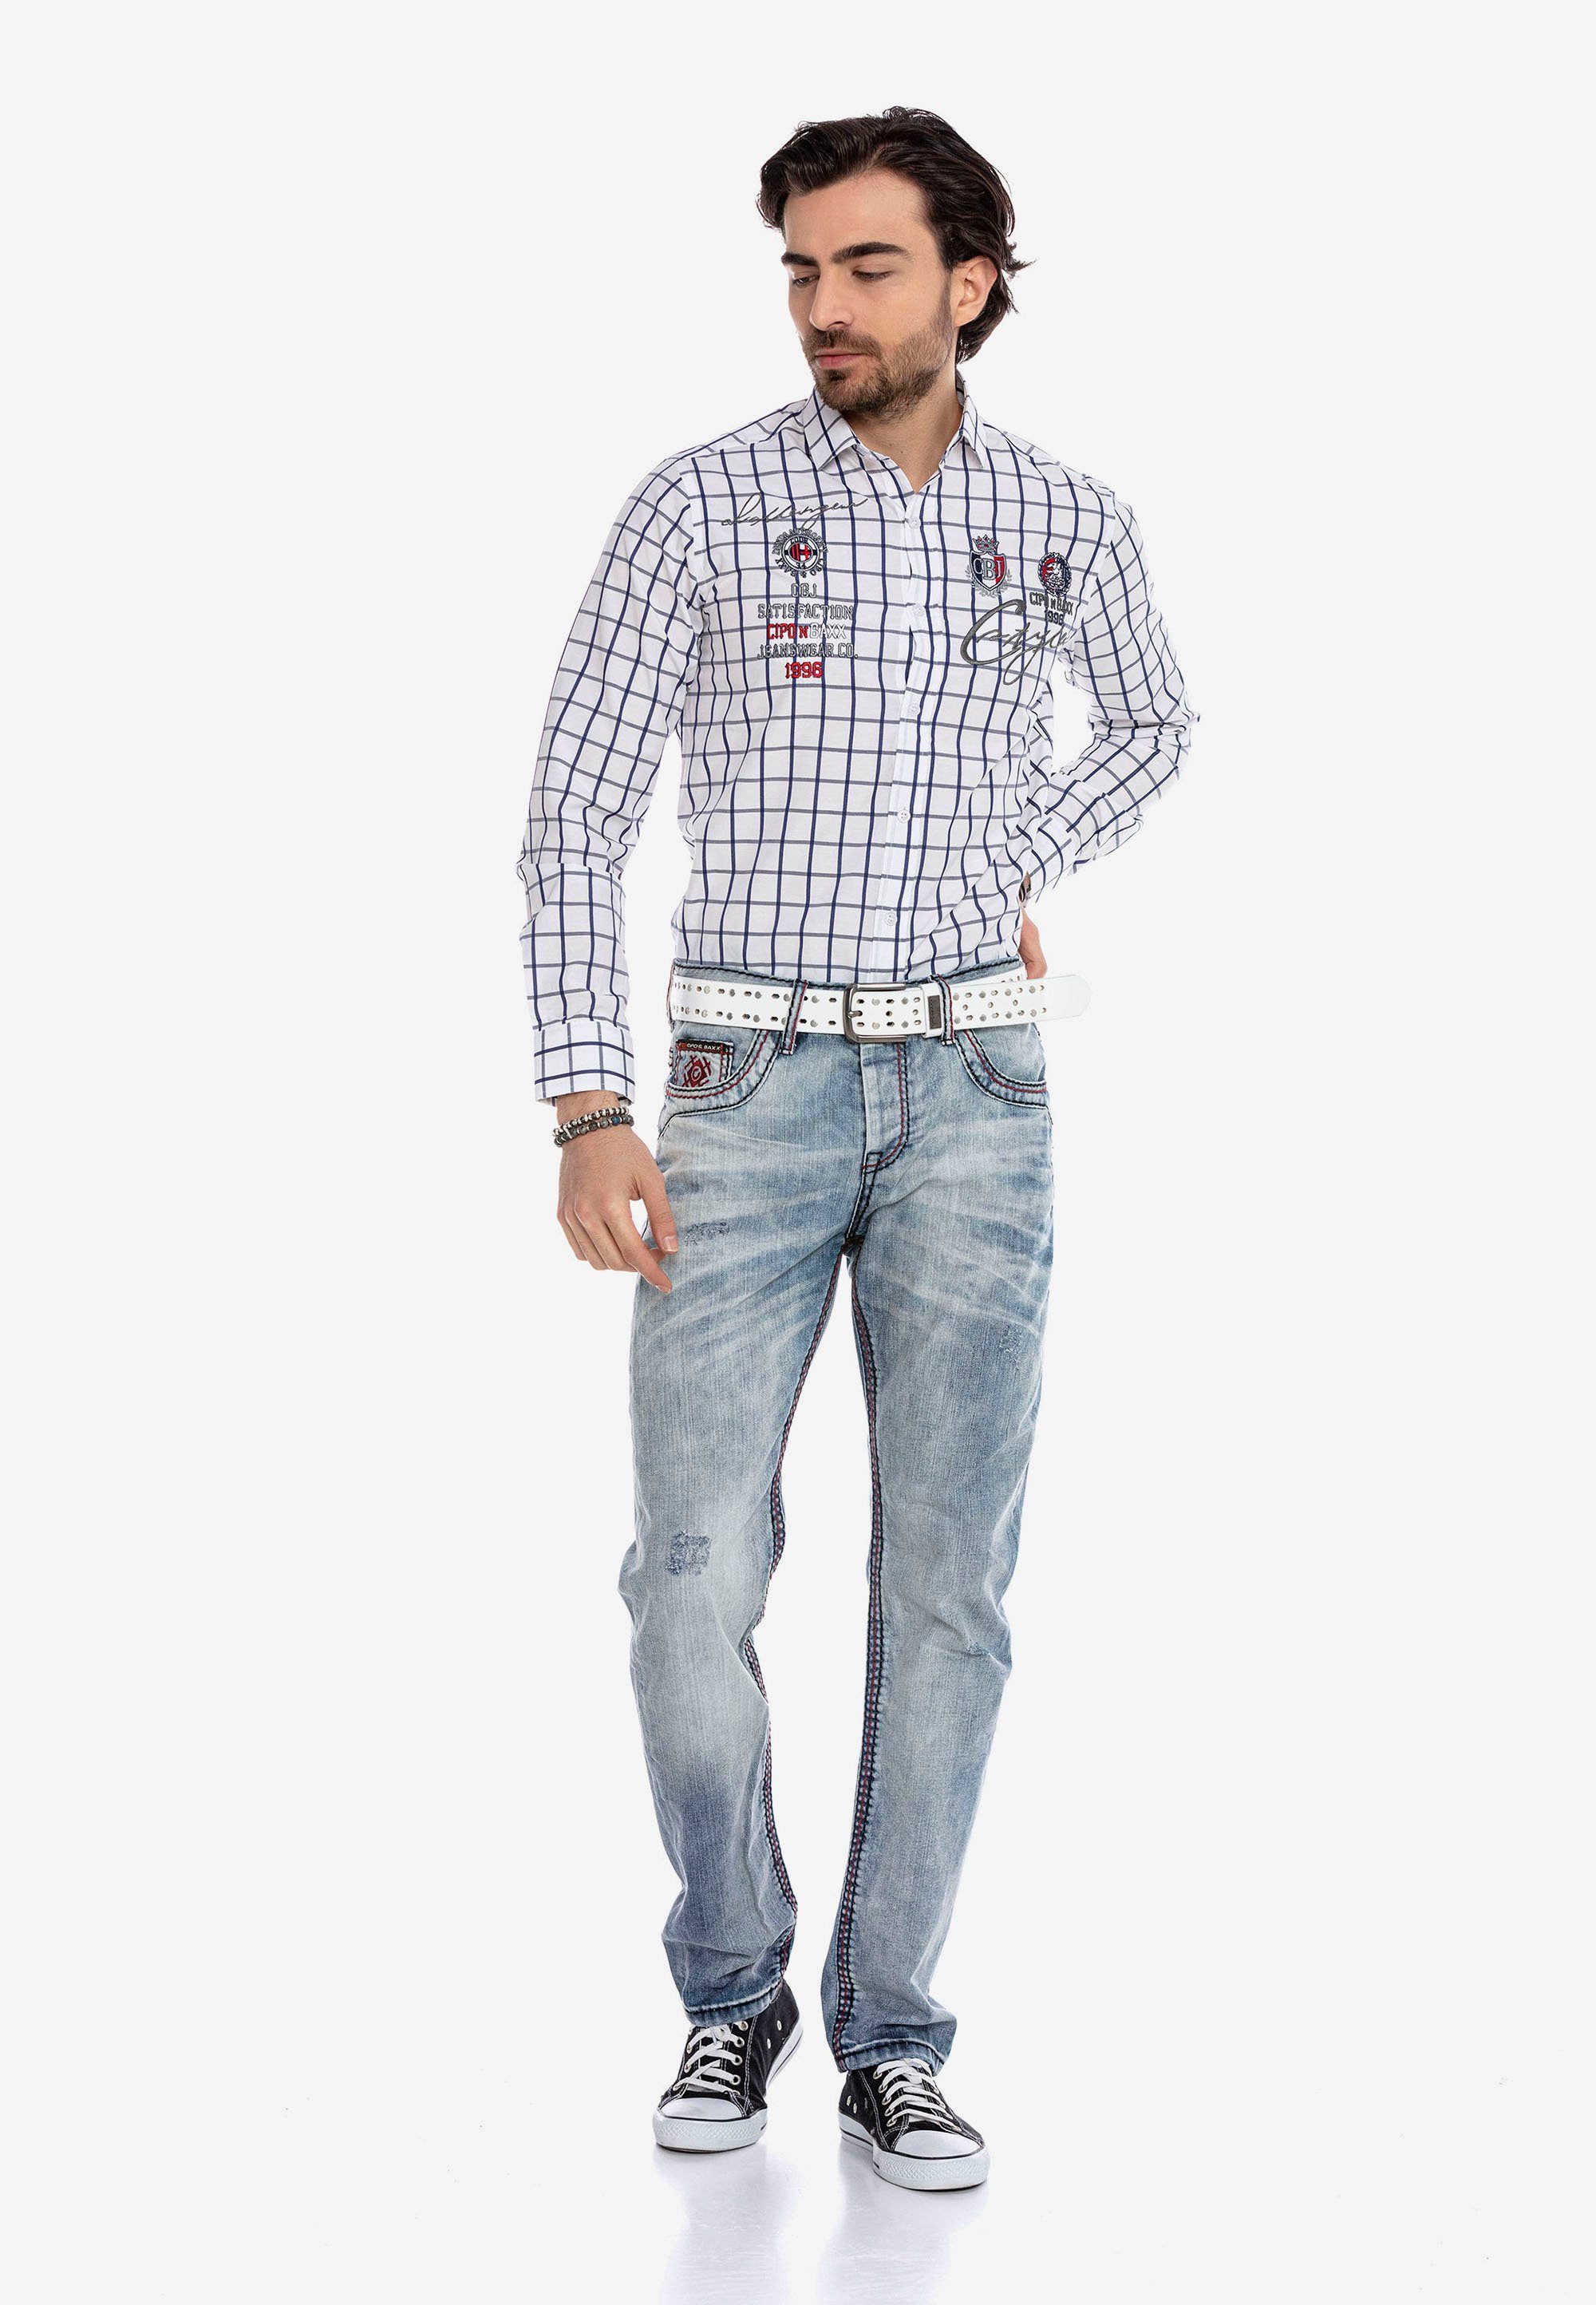 Cipo & Baxx in modischem Straight-Jeans Design